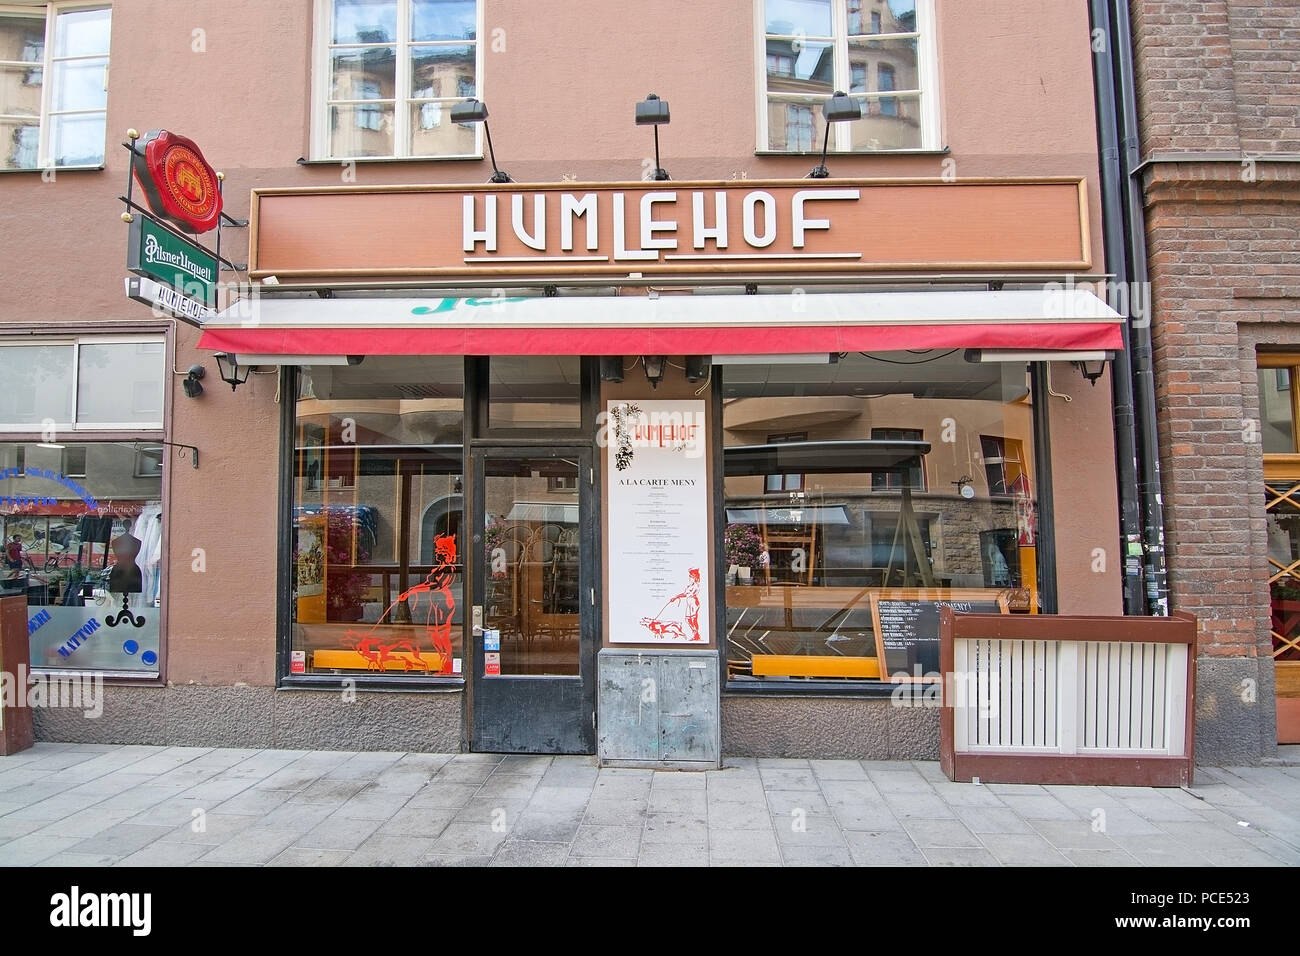 STOCKHOLM, Schweden - 11. JULI 2018: Fußgängerzone mit Restaurant Humlehof auf Rorstrandsgatan in Vasastan am 11. Juli 2018 in Stockholm, Schweden. Stockfoto